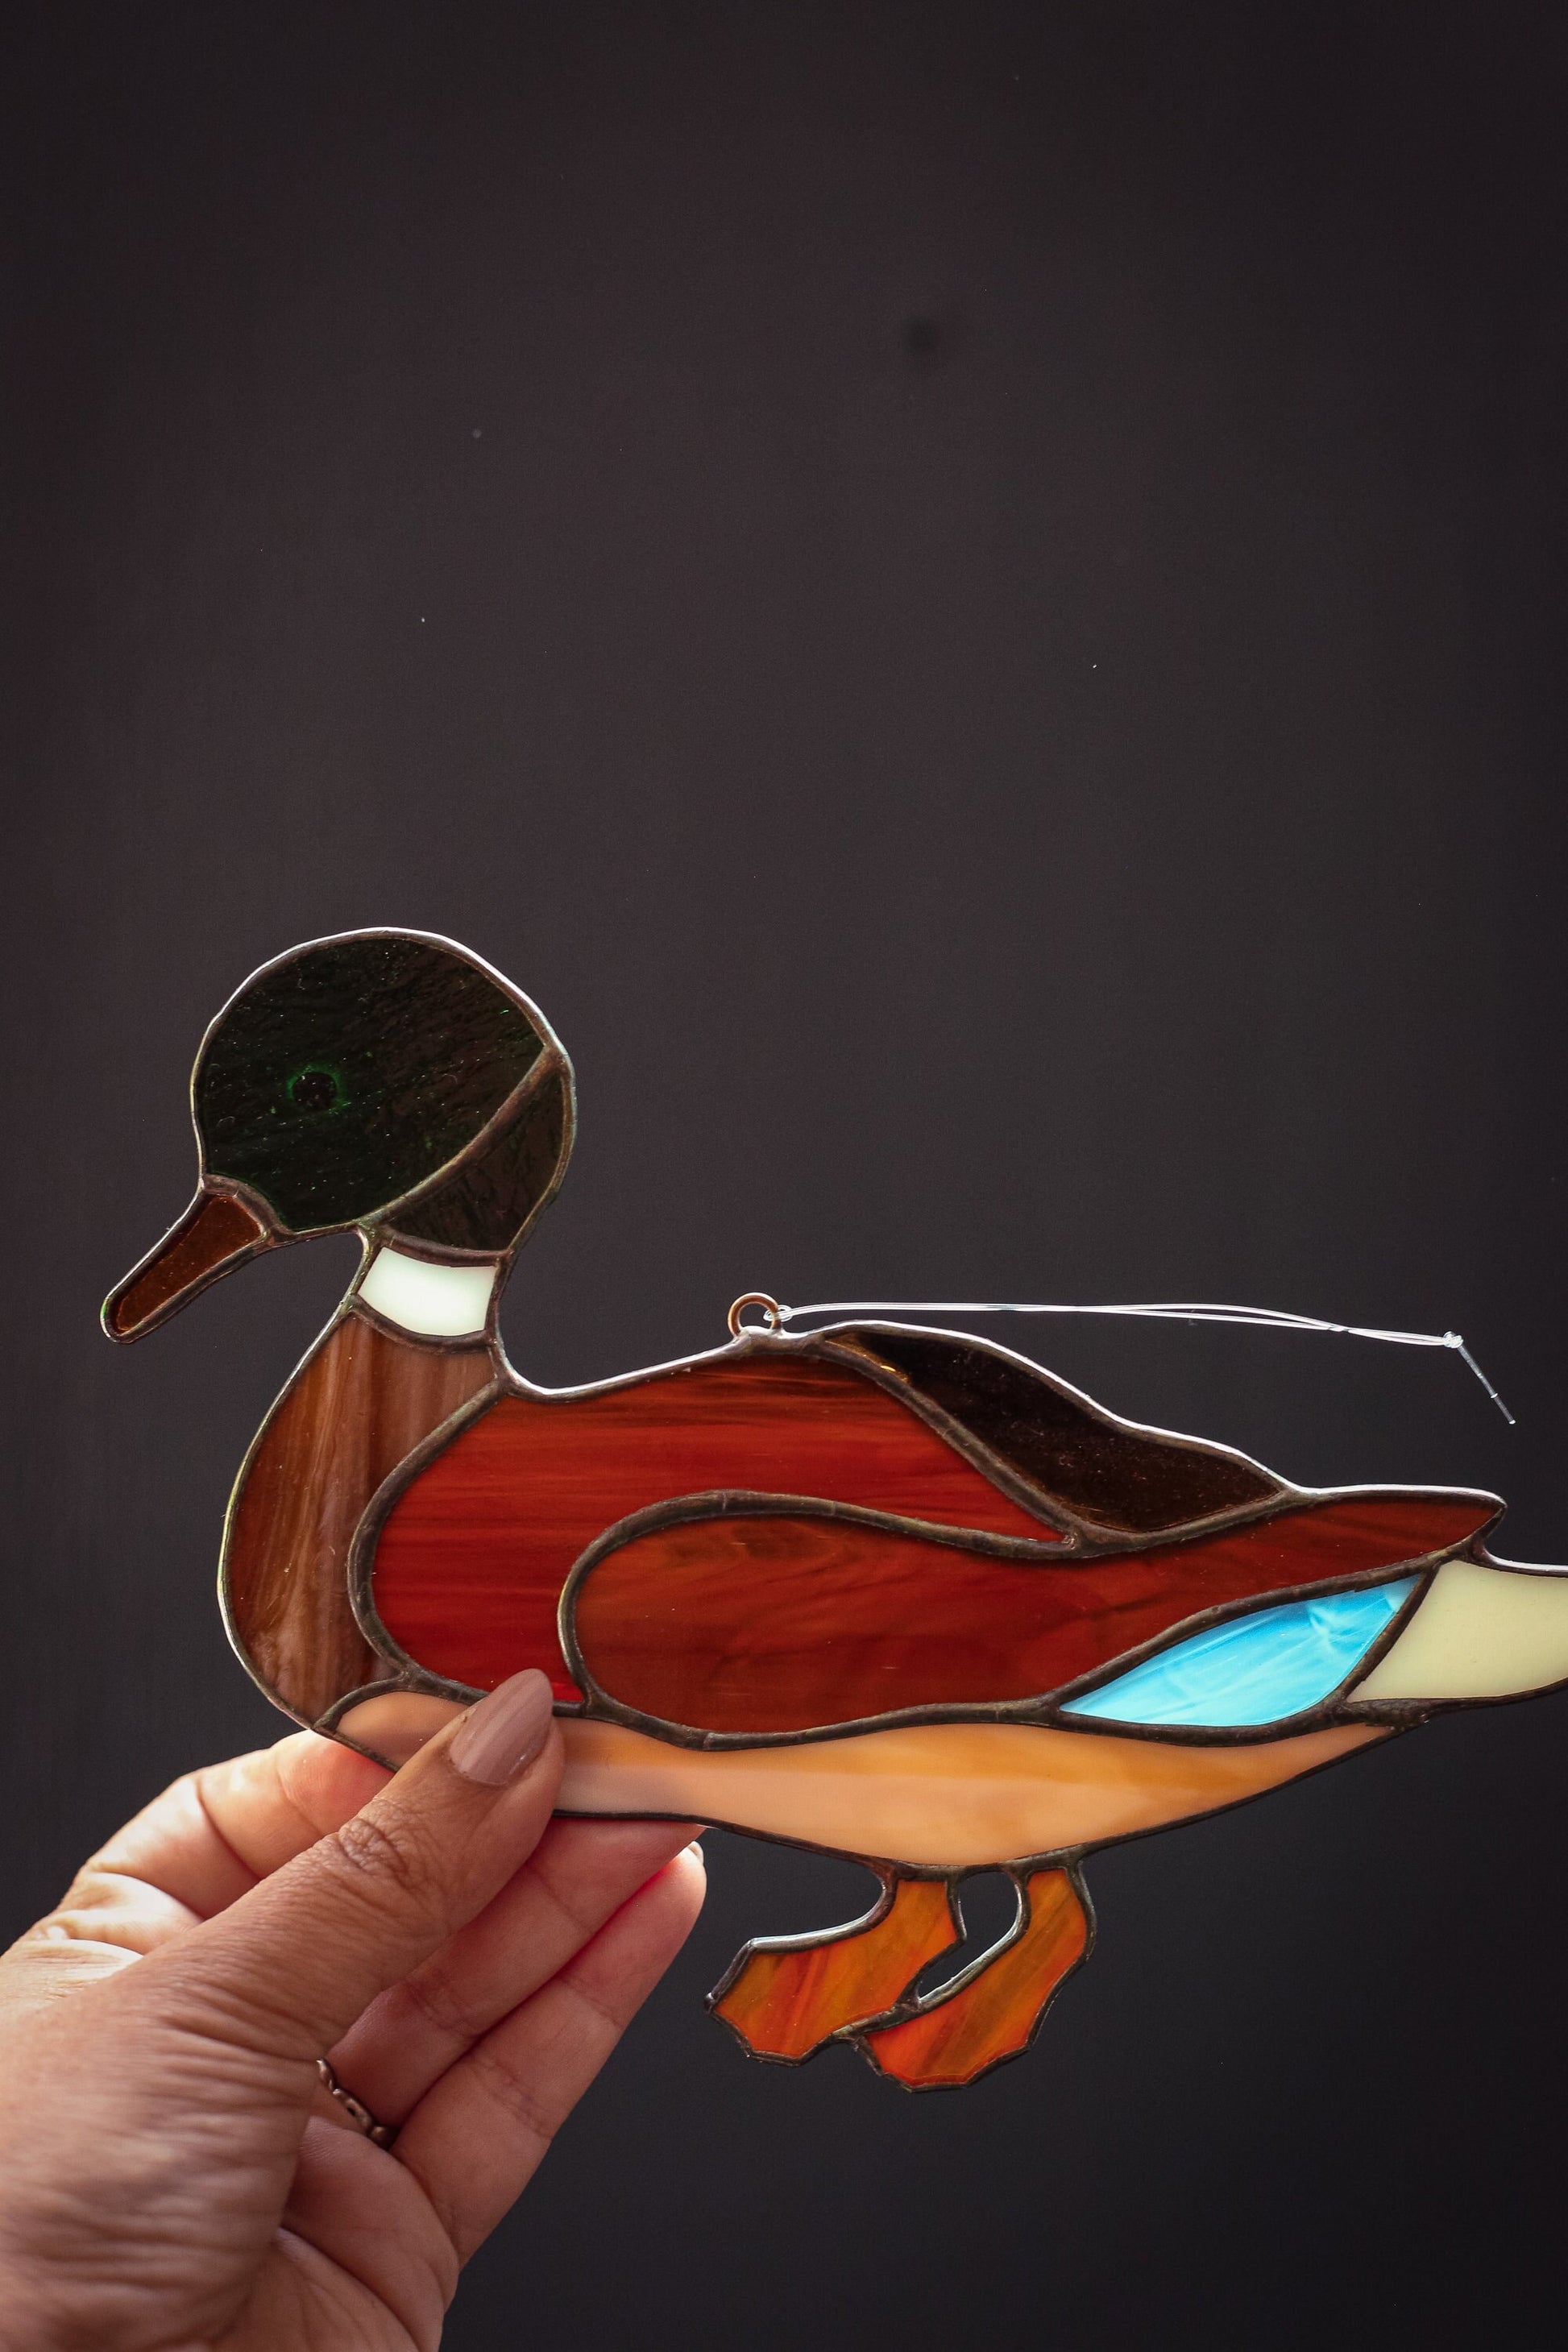 Stained Glass Mallard Duck Sun Catcher - Vintage Duck Suncatcher